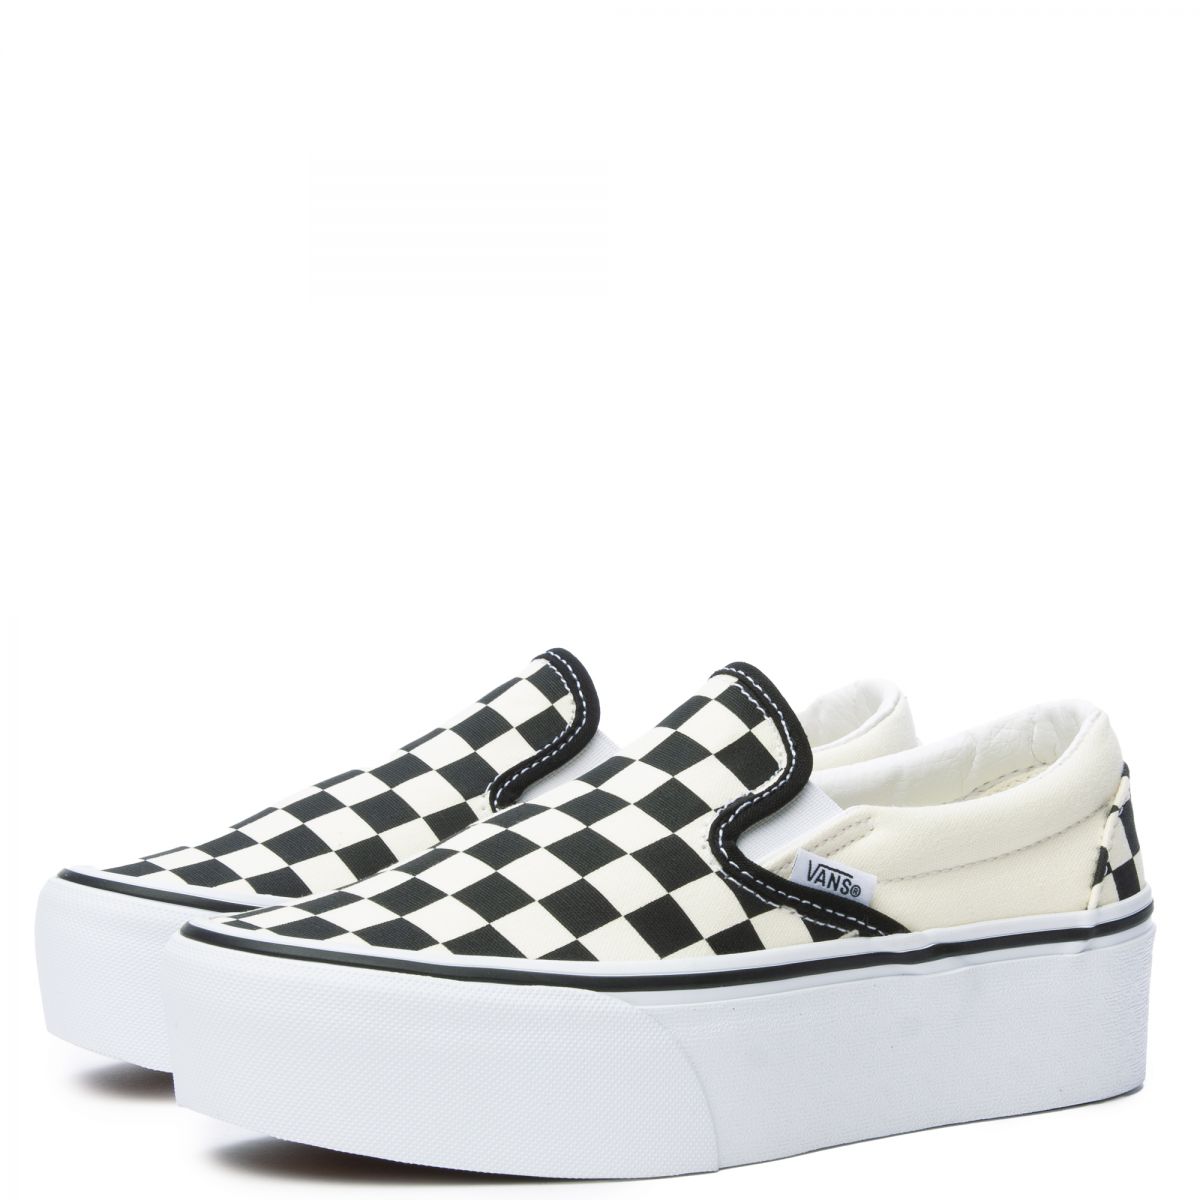 Vans Classic Slip-On Stackform sneakers in checkerboard